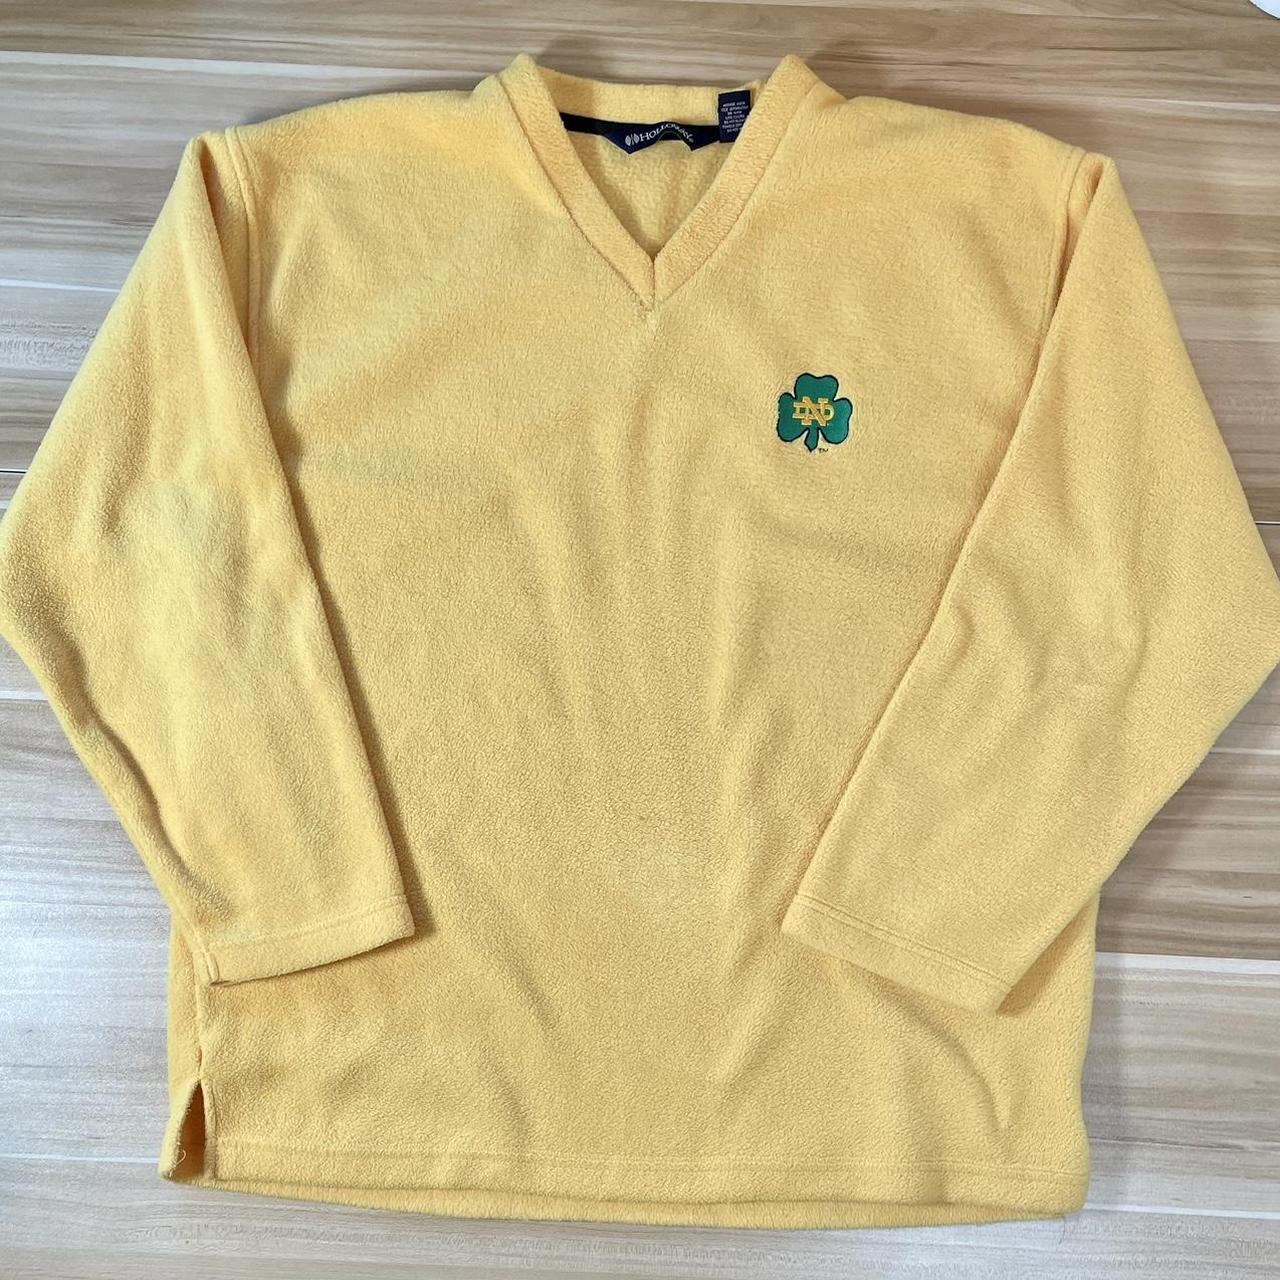 Holloway Men's Yellow and Green Sweatshirt | Depop